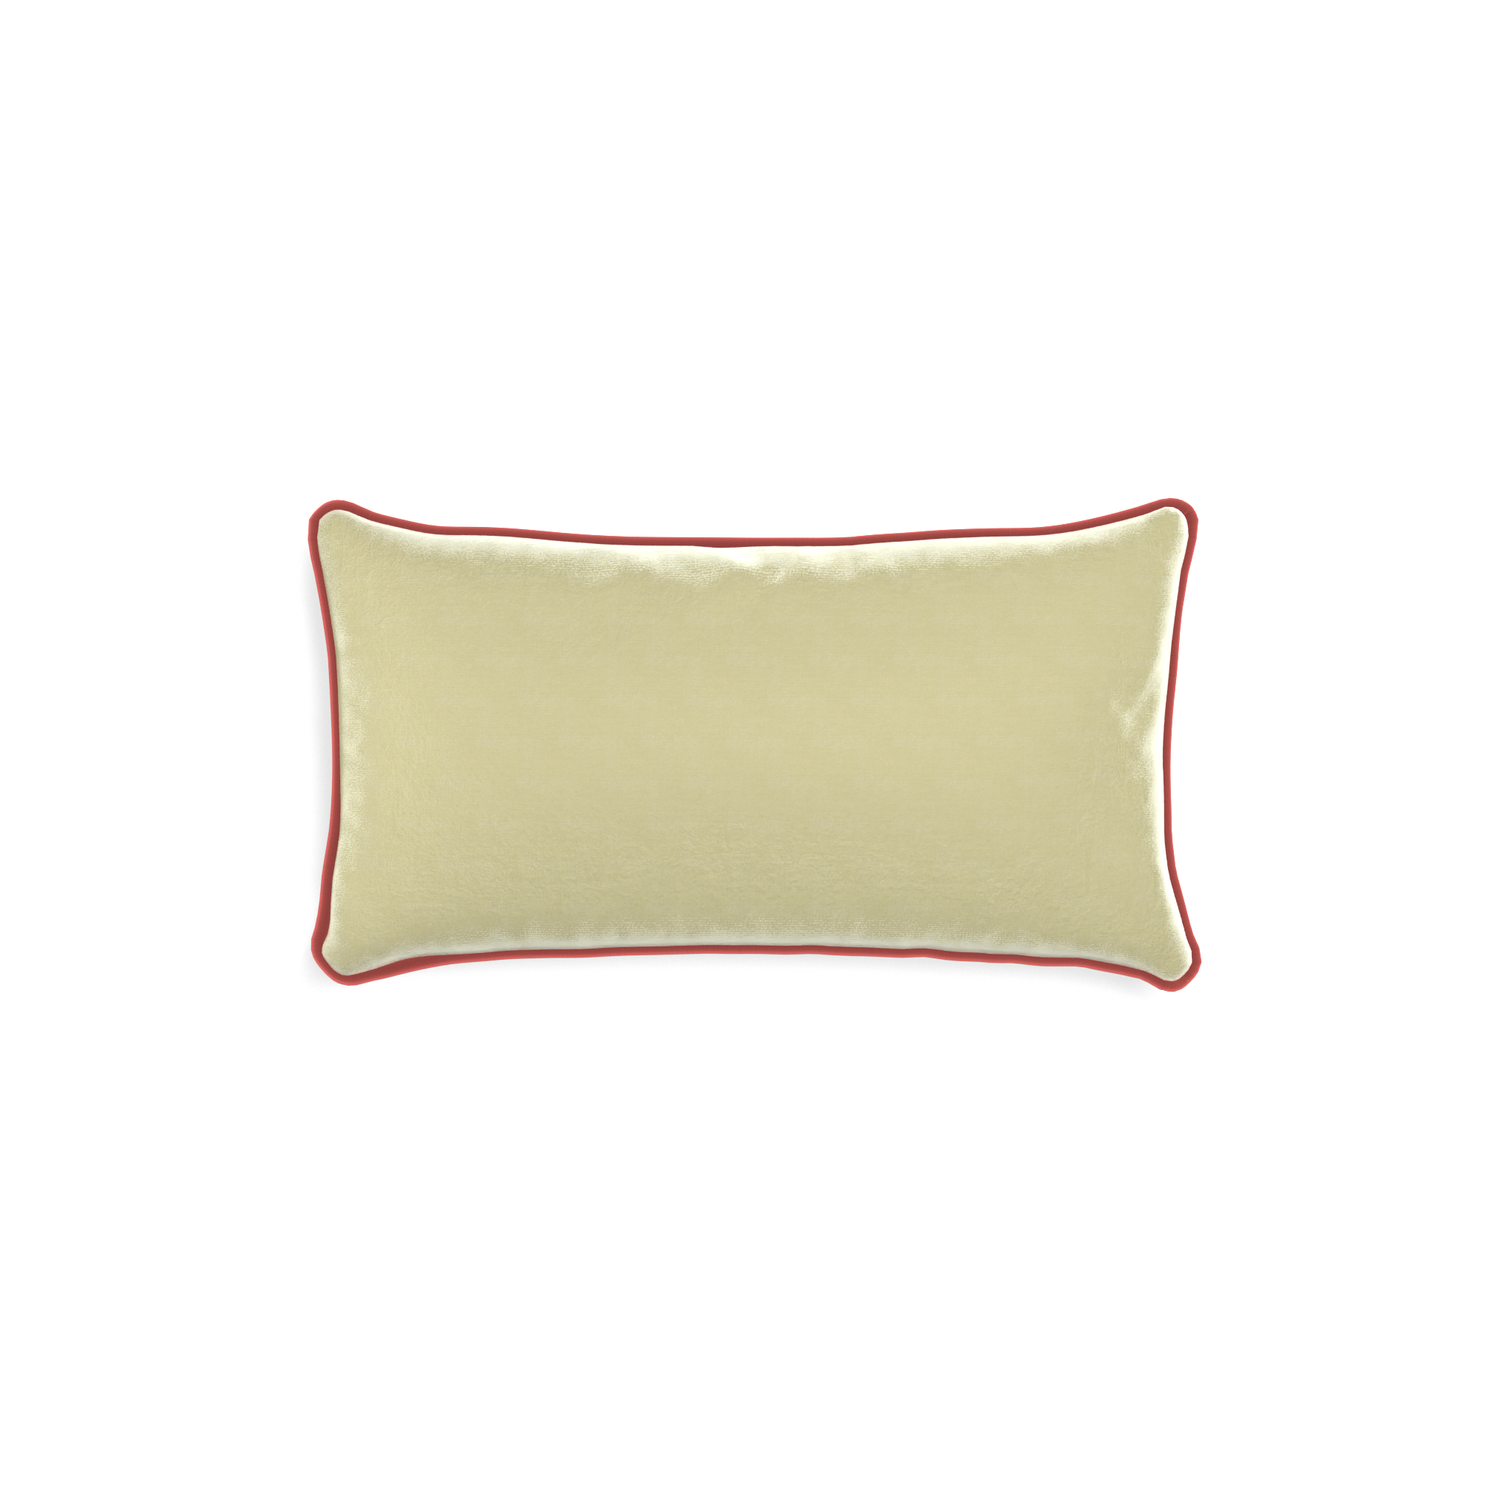 rectangle light green velvet pillow with dark pink velvet piping